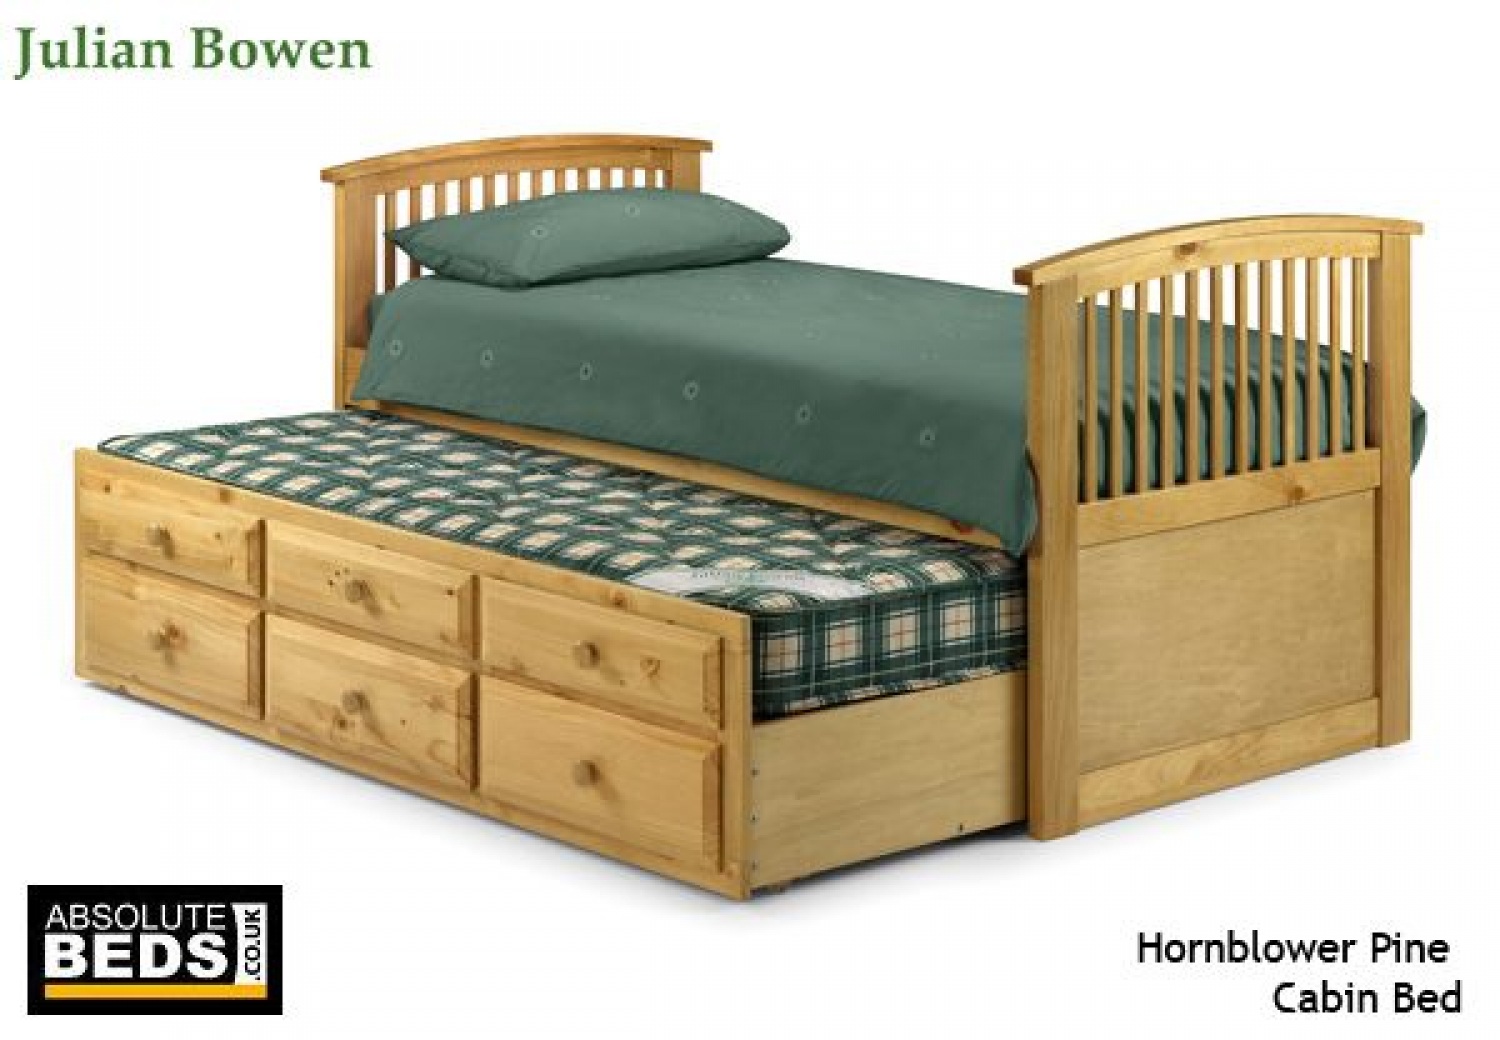 julian bowen hornblower pine cabin bed image